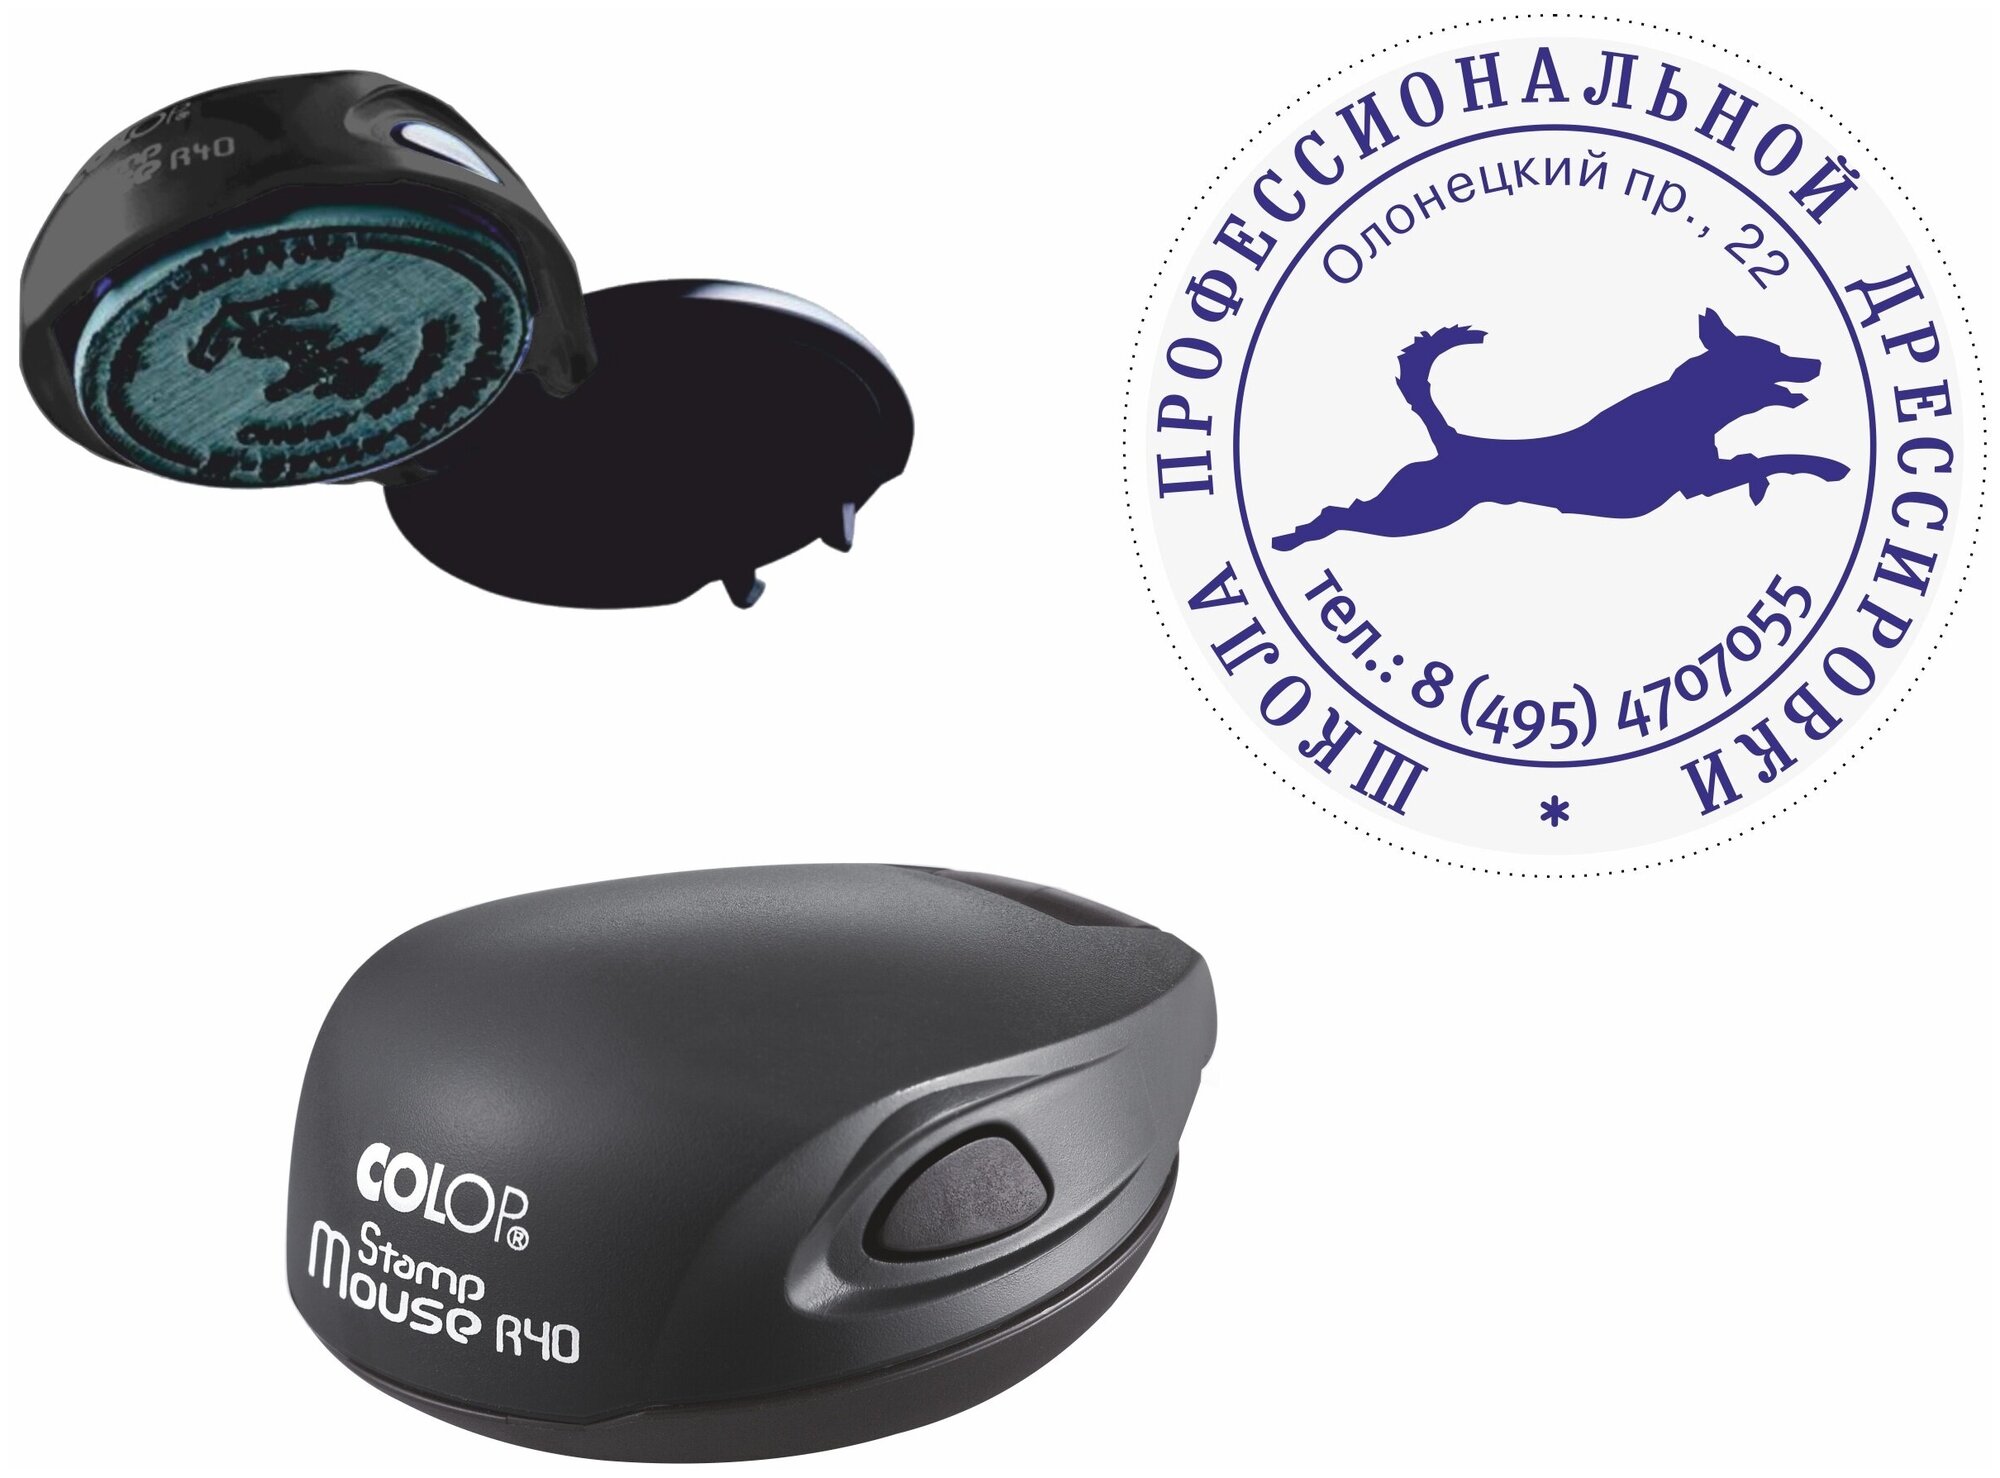 Оснастка для печати Colop круглая, карманная, Stamp Mouse, черная